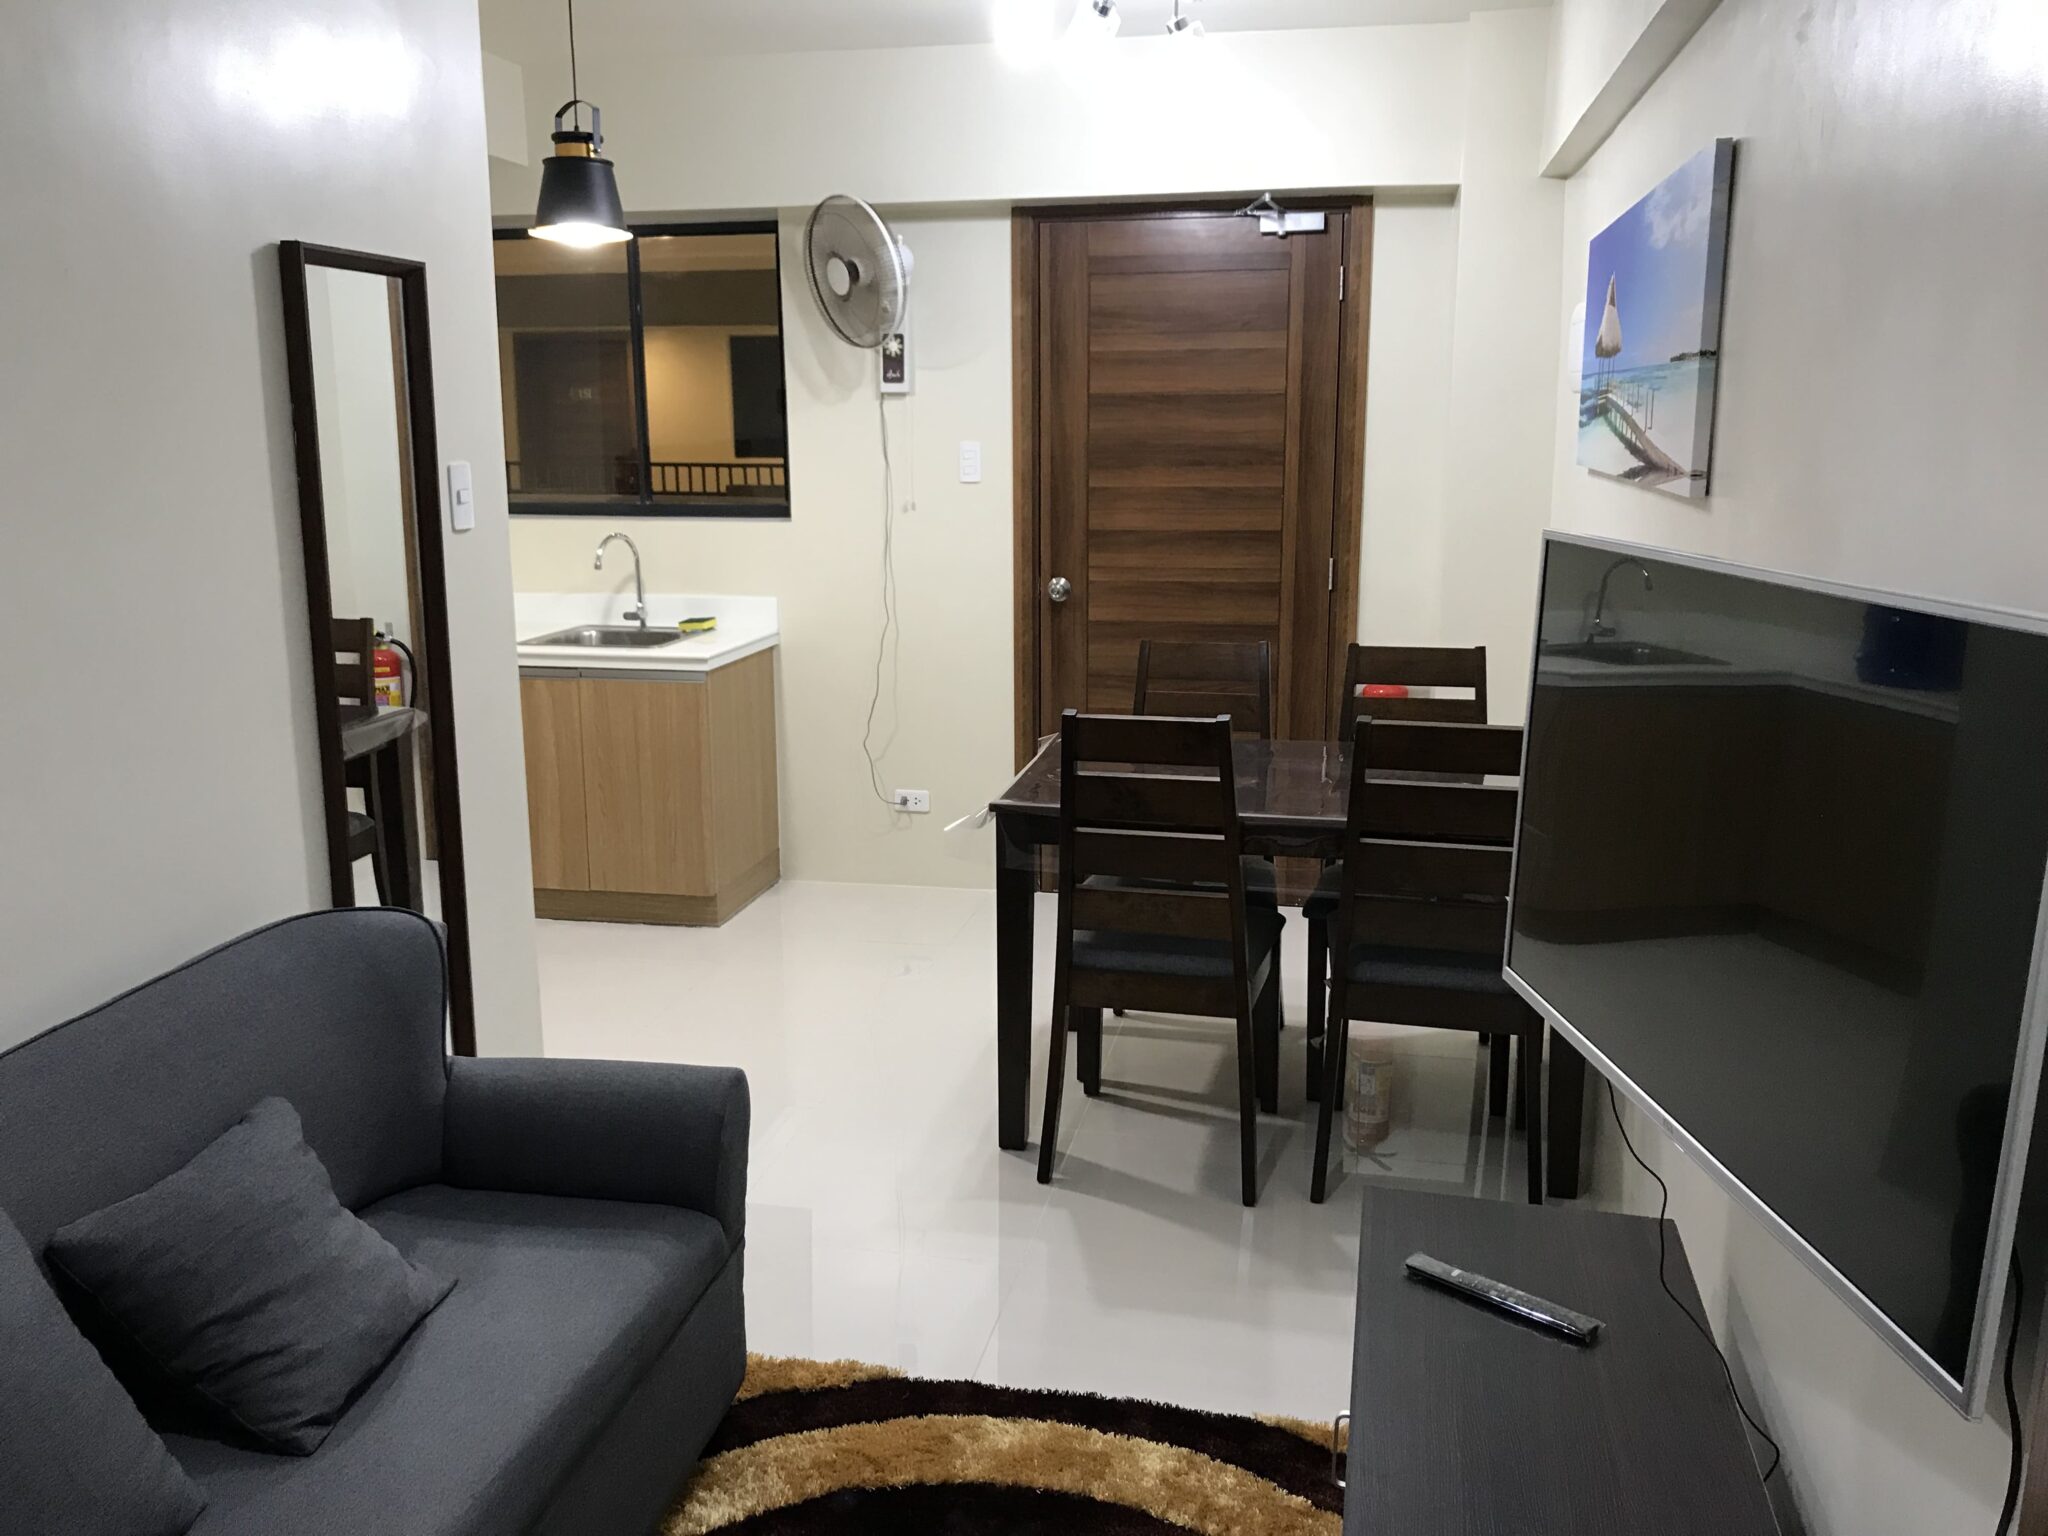 1 BR Condo for Rent in Soltana Nature Residences Marigondon Lapu-Lapu City